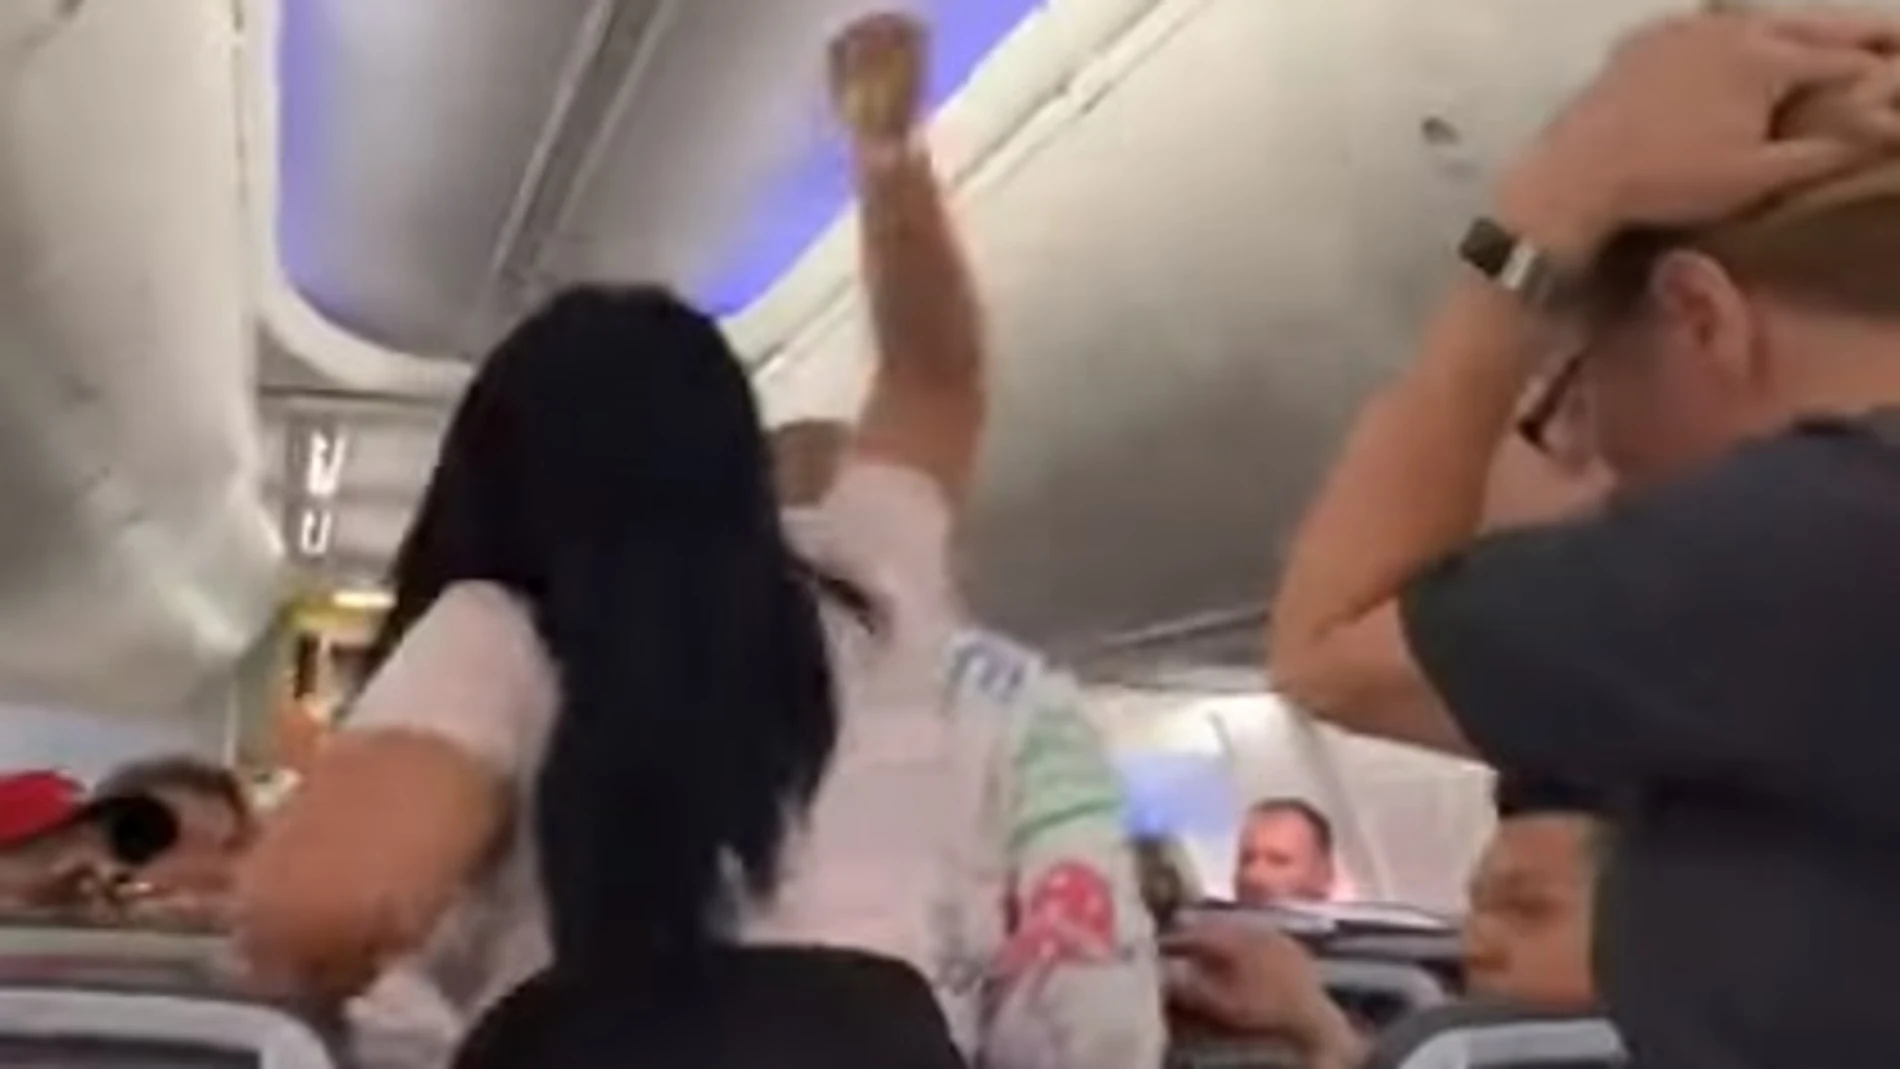 Una mujer agrede a su pareja en un avión tras una discusión